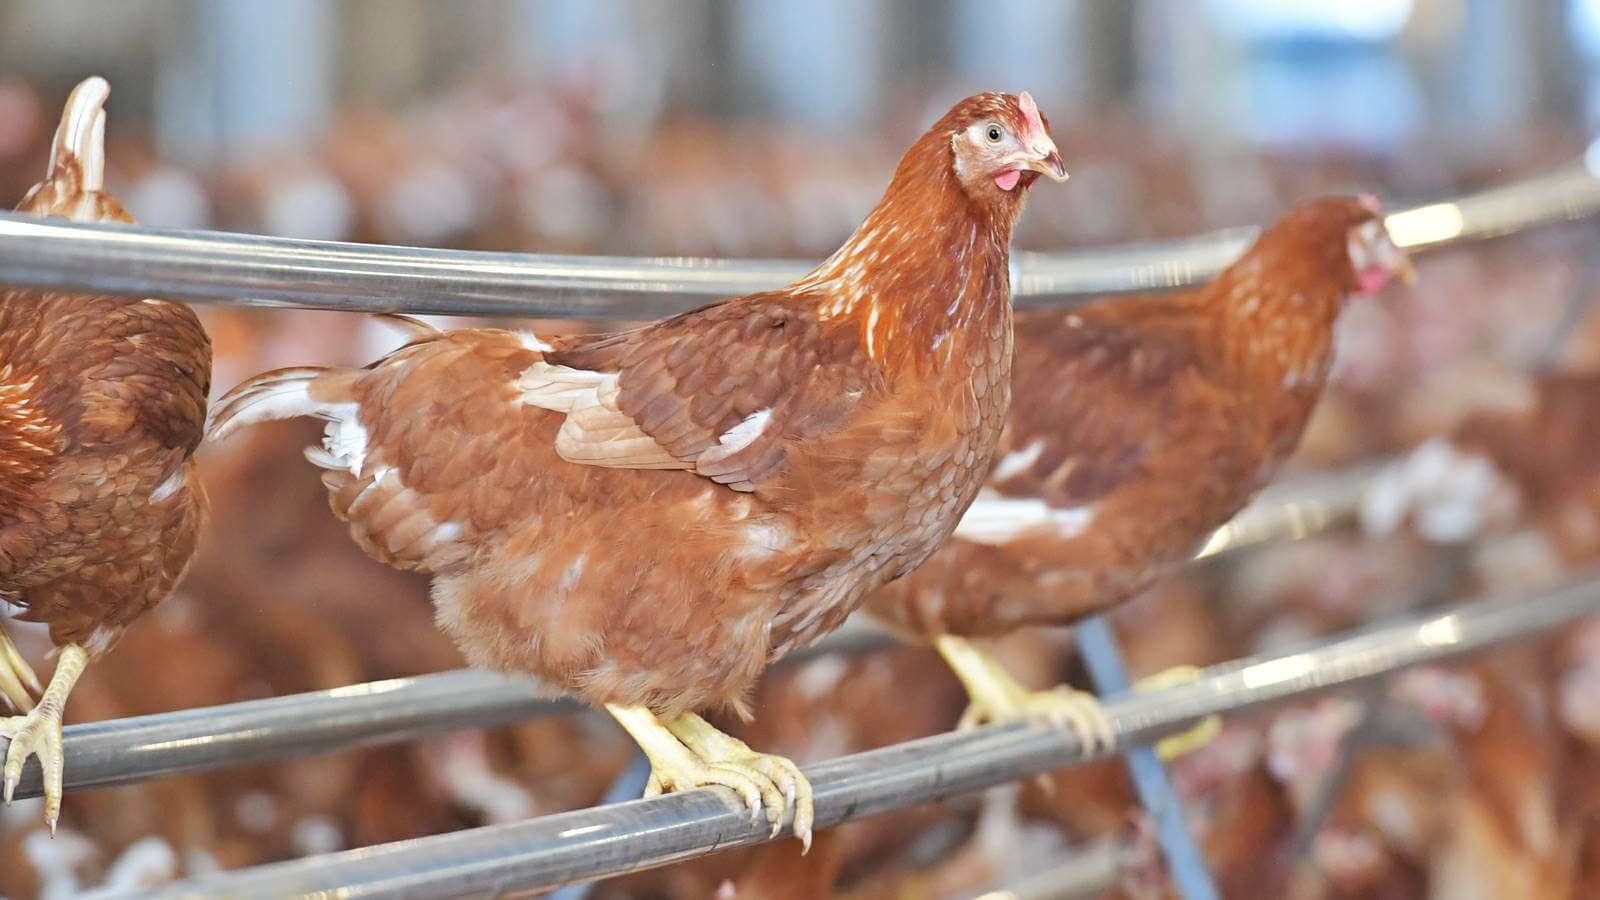 ซีพีเอฟ เตรียมพร้อมนำ ฟาร์มวังสมบูรณ์ ขอรับรองมาตรฐานฟาร์มไก่ไข่เคจฟรีของกรมปศุสัตว์